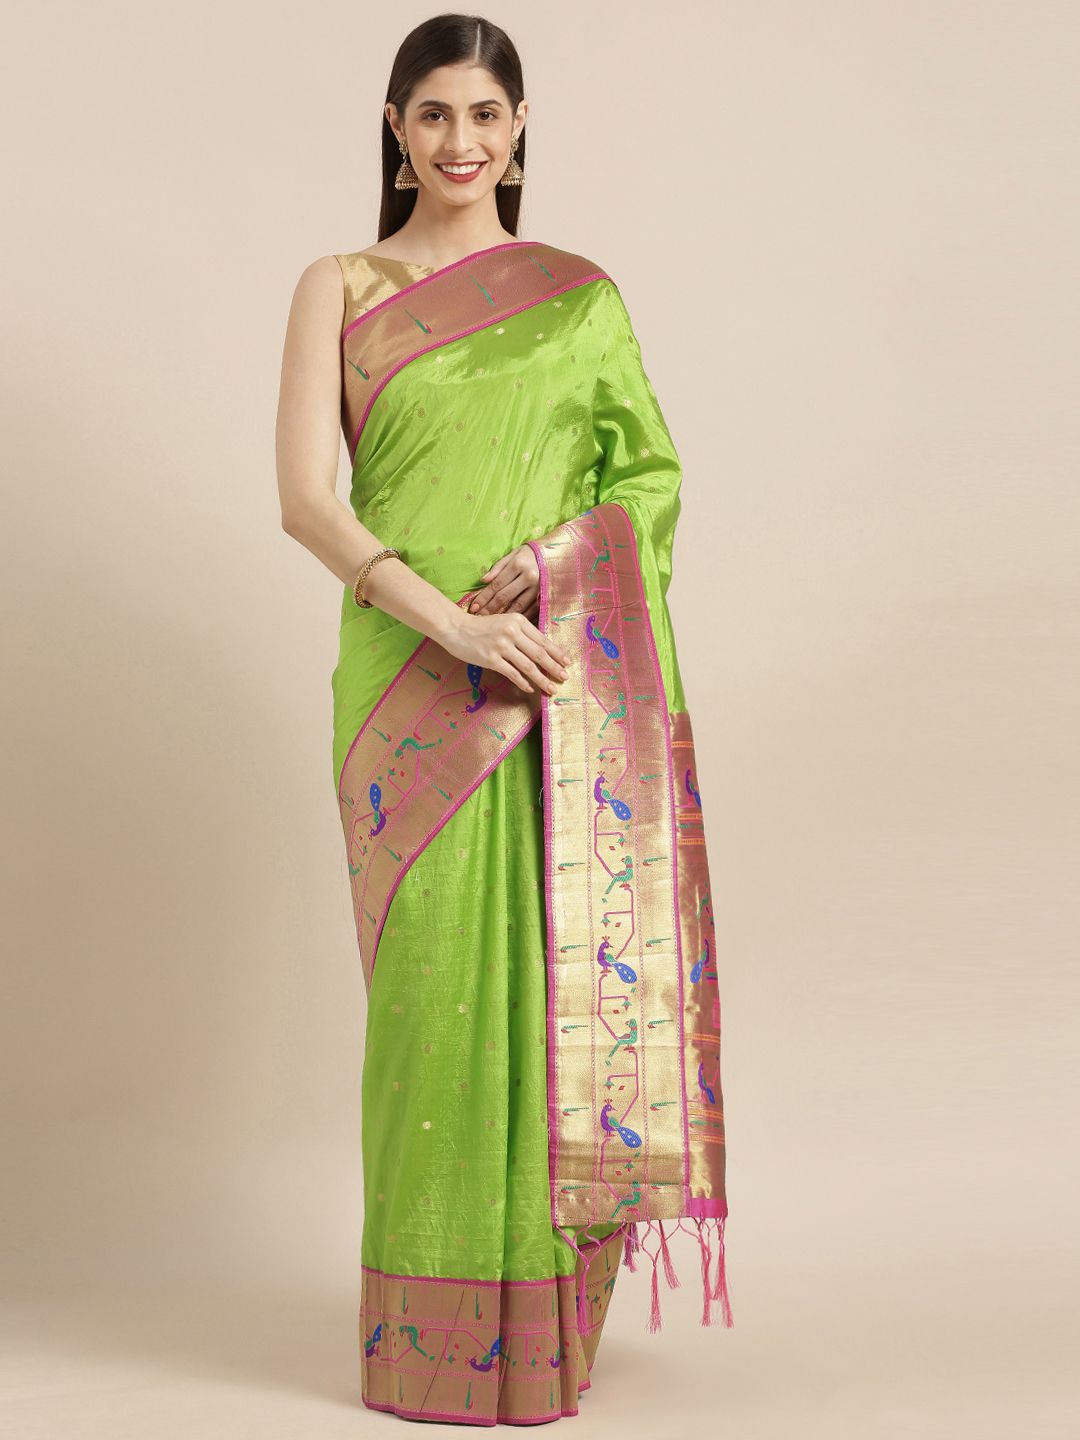 Varkala Silk Sarees Green & Pink Silk Blend Woven Design Paithani Saree Price in India